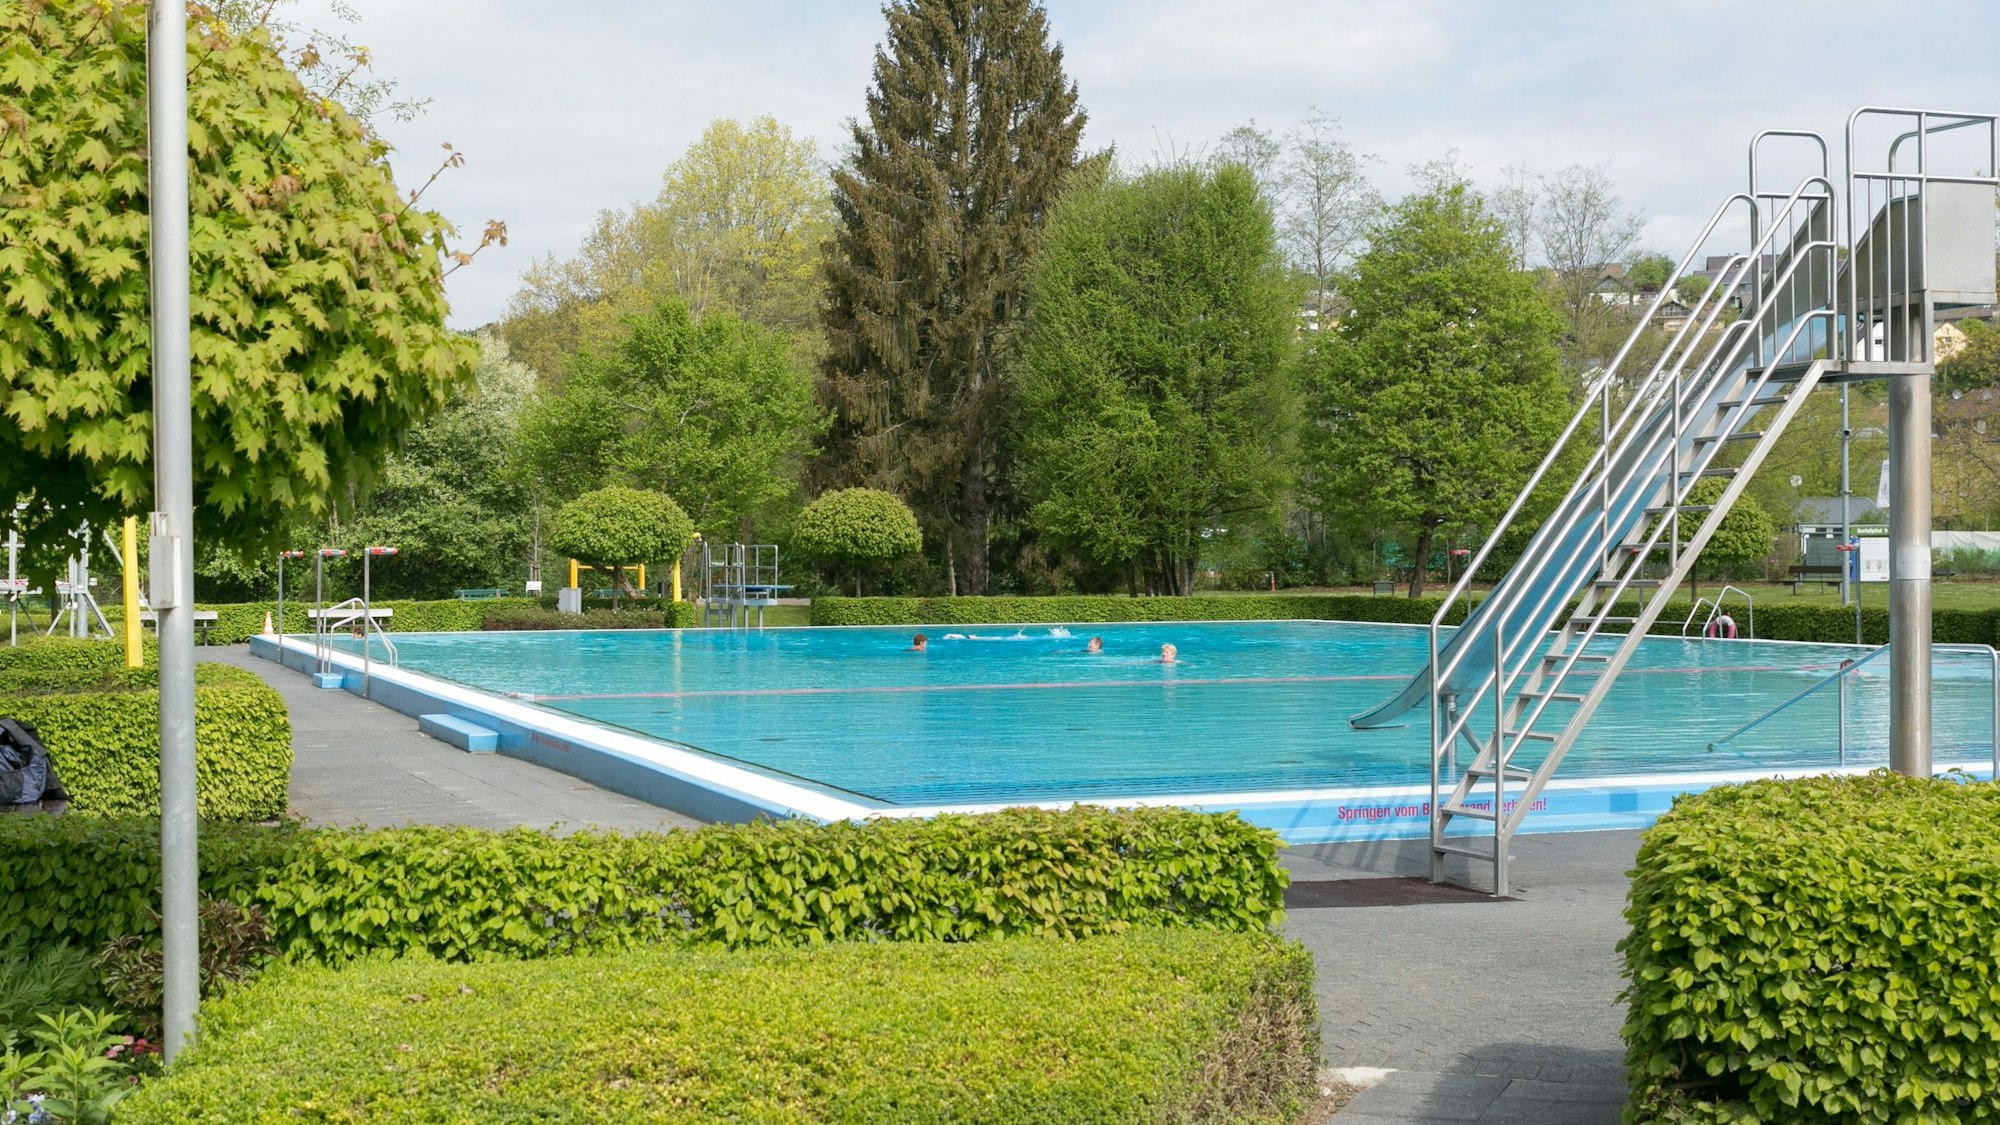 Blick auf das Schwimmbecken samt Rutsche des Freibads Bielstein.